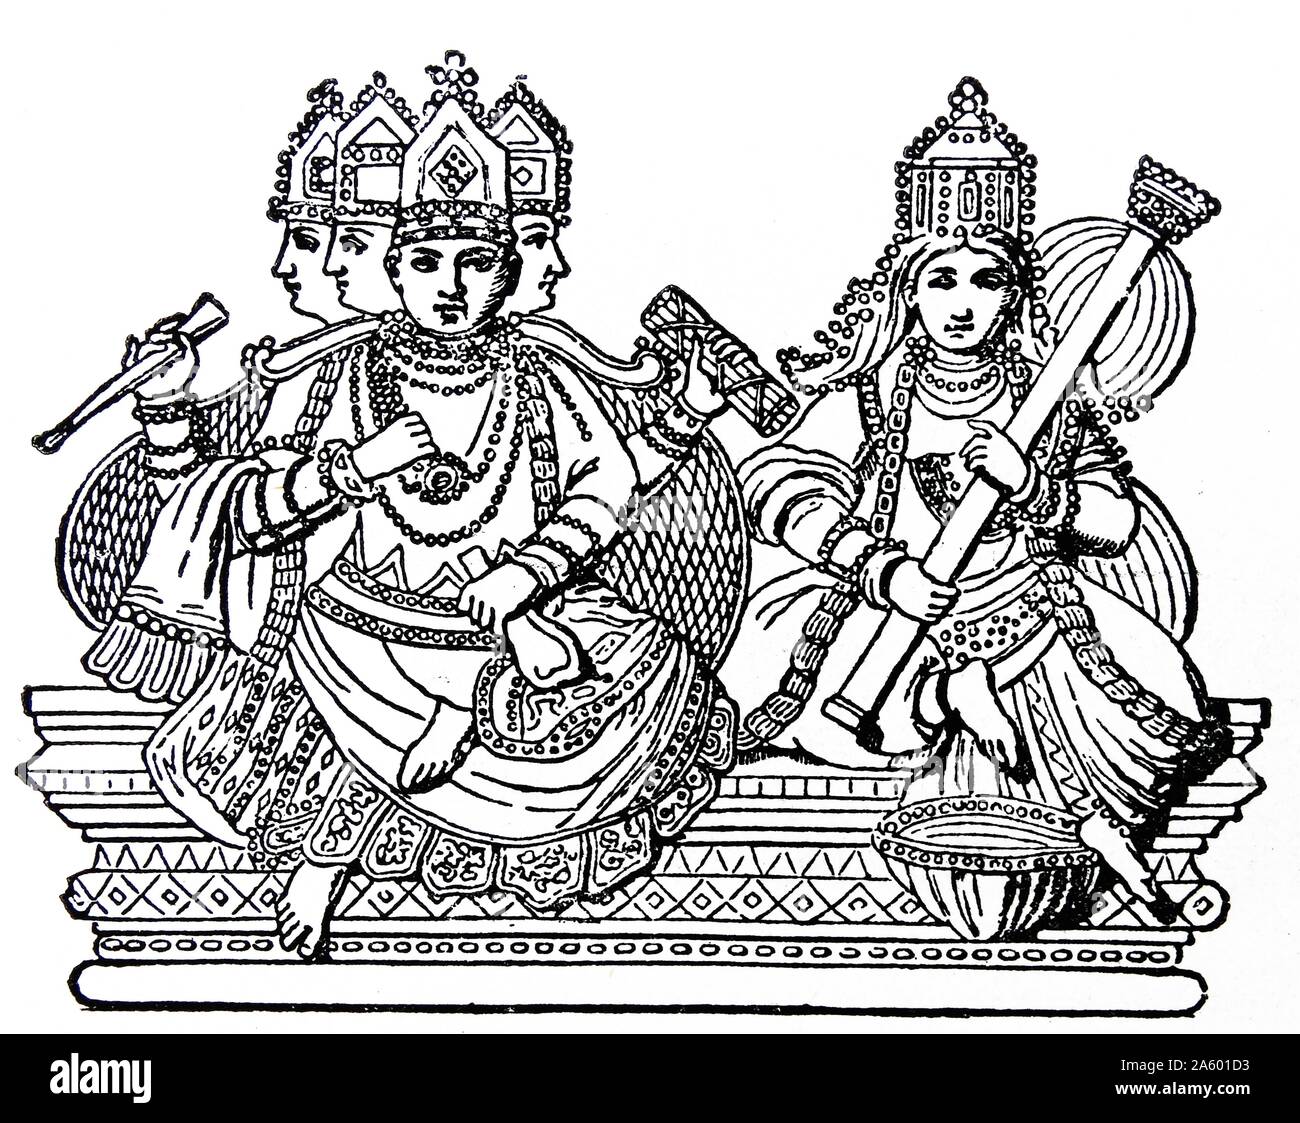 Brahma (der hinduistische Schöpfergott) mit 4 Gesichtern, zusammen mit seiner Gemahlin Sarasvati die Hindu-Göttin des Wissens, Musik und Kunst dargestellt. Abbildung des 19. Jahrhunderts. Stockfoto